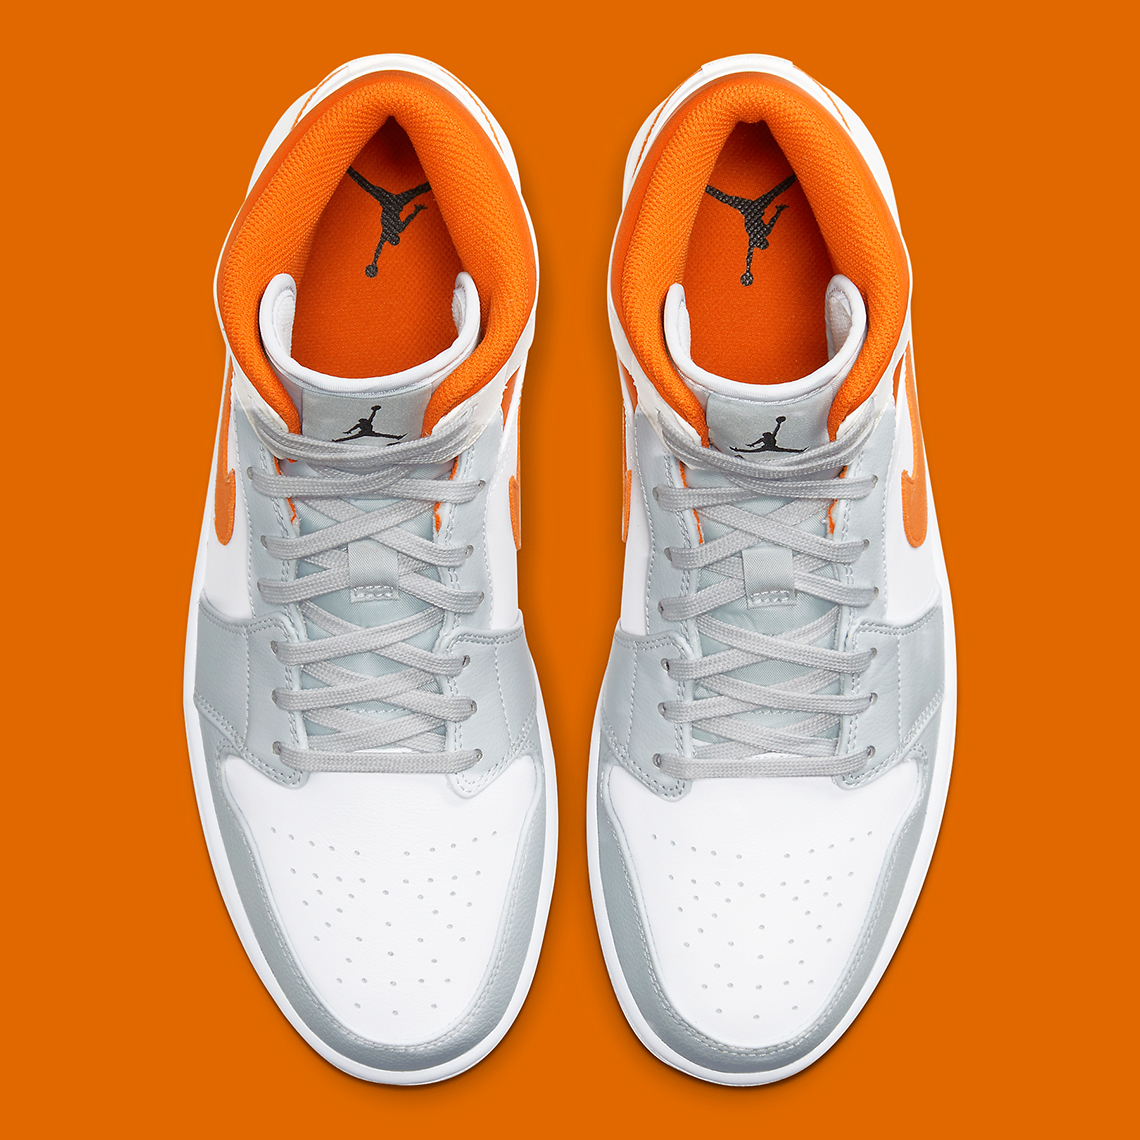 grey and orange air jordan 1